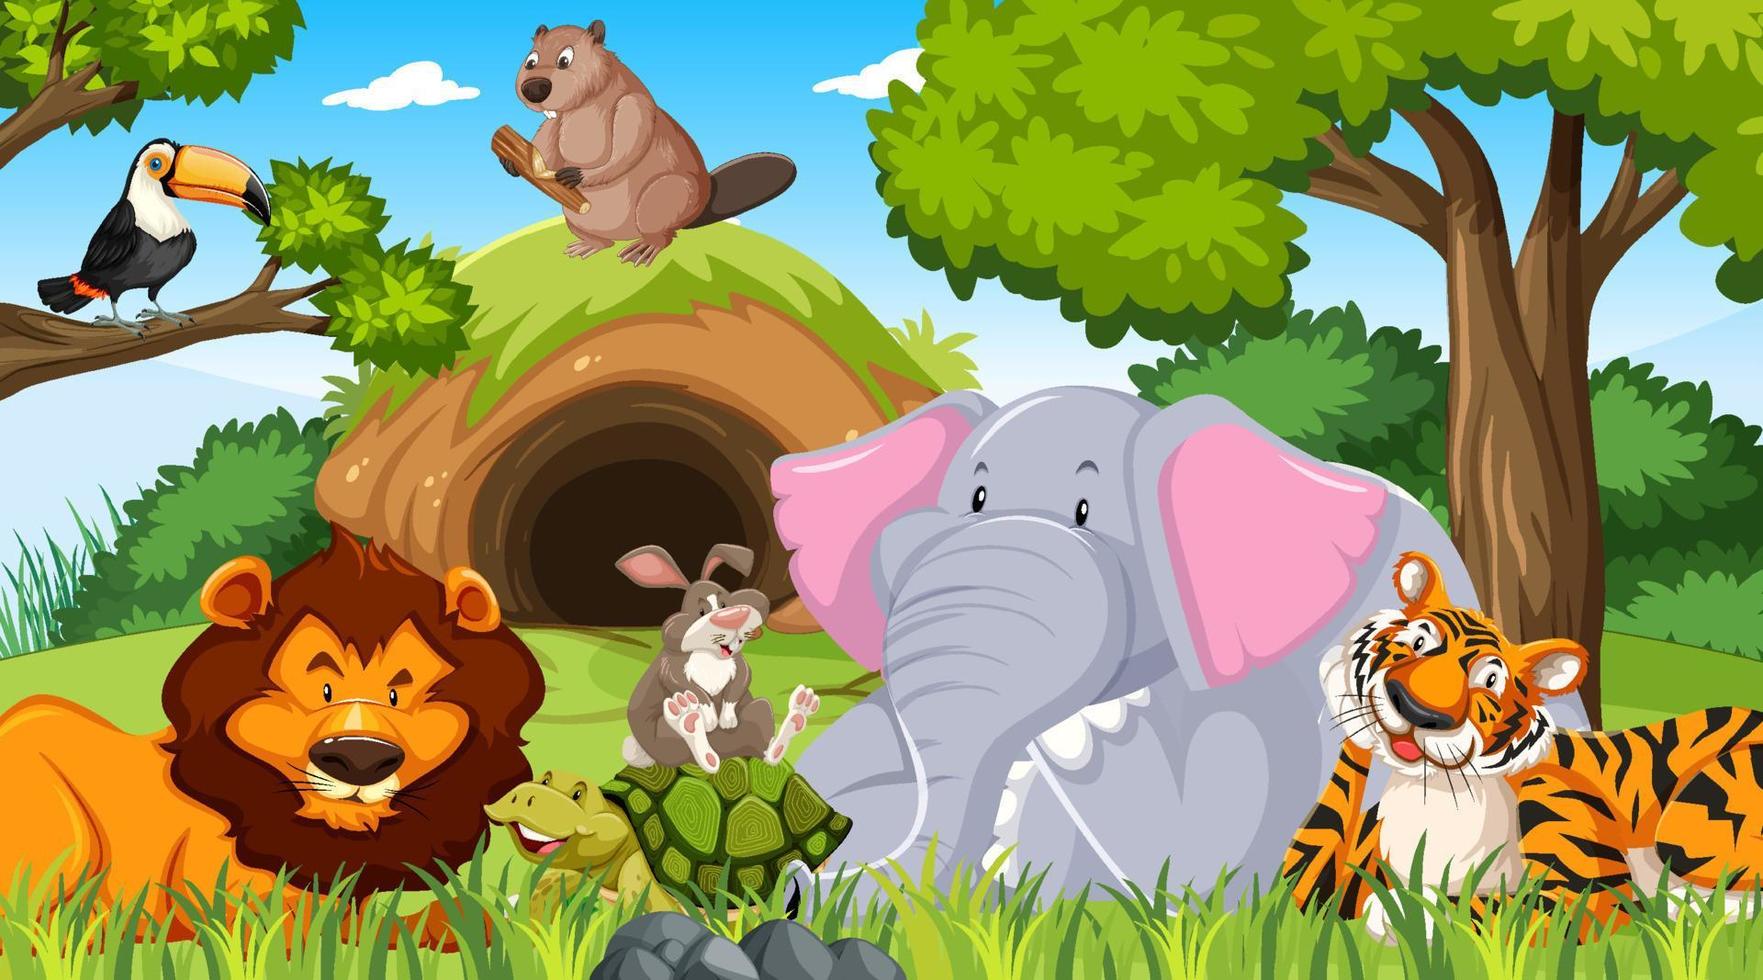 personnages de dessins animés d'animaux sauvages dans la scène de la forêt vecteur